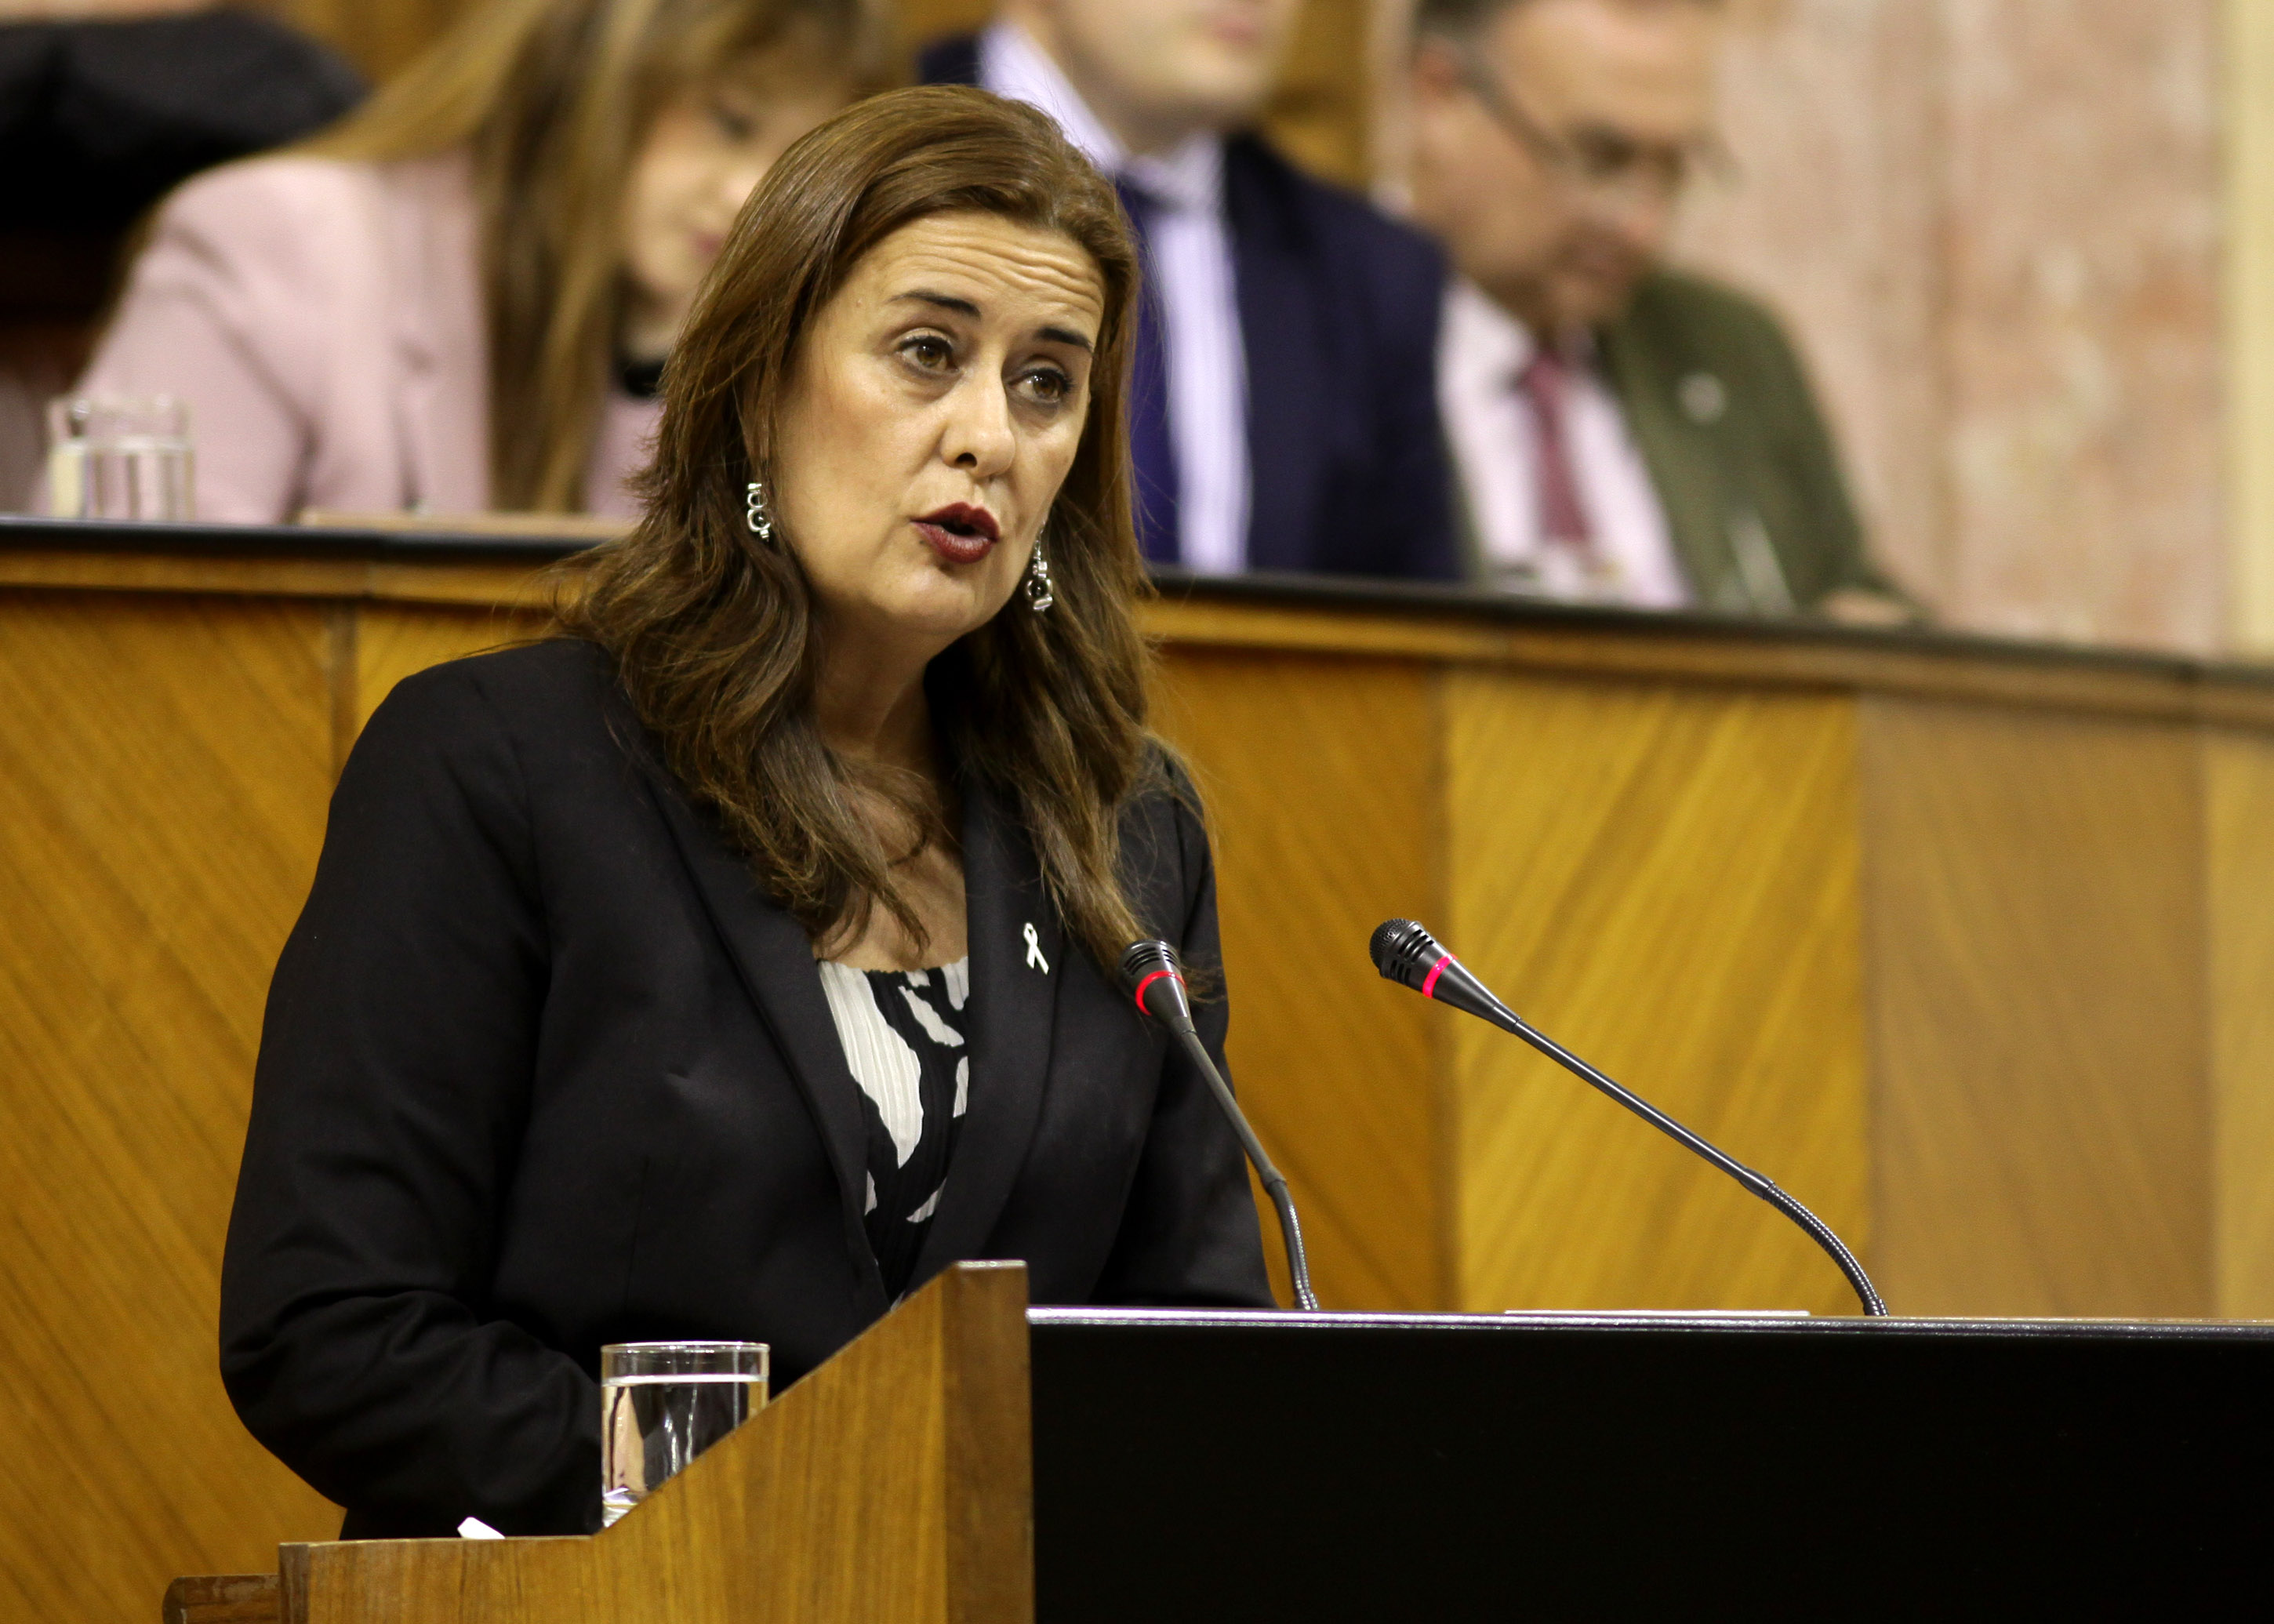 La consejera de Educacin, Sonia Gaya, presenta al Pleno el proyecto de Ley de Formacin Profesional de Andaluca